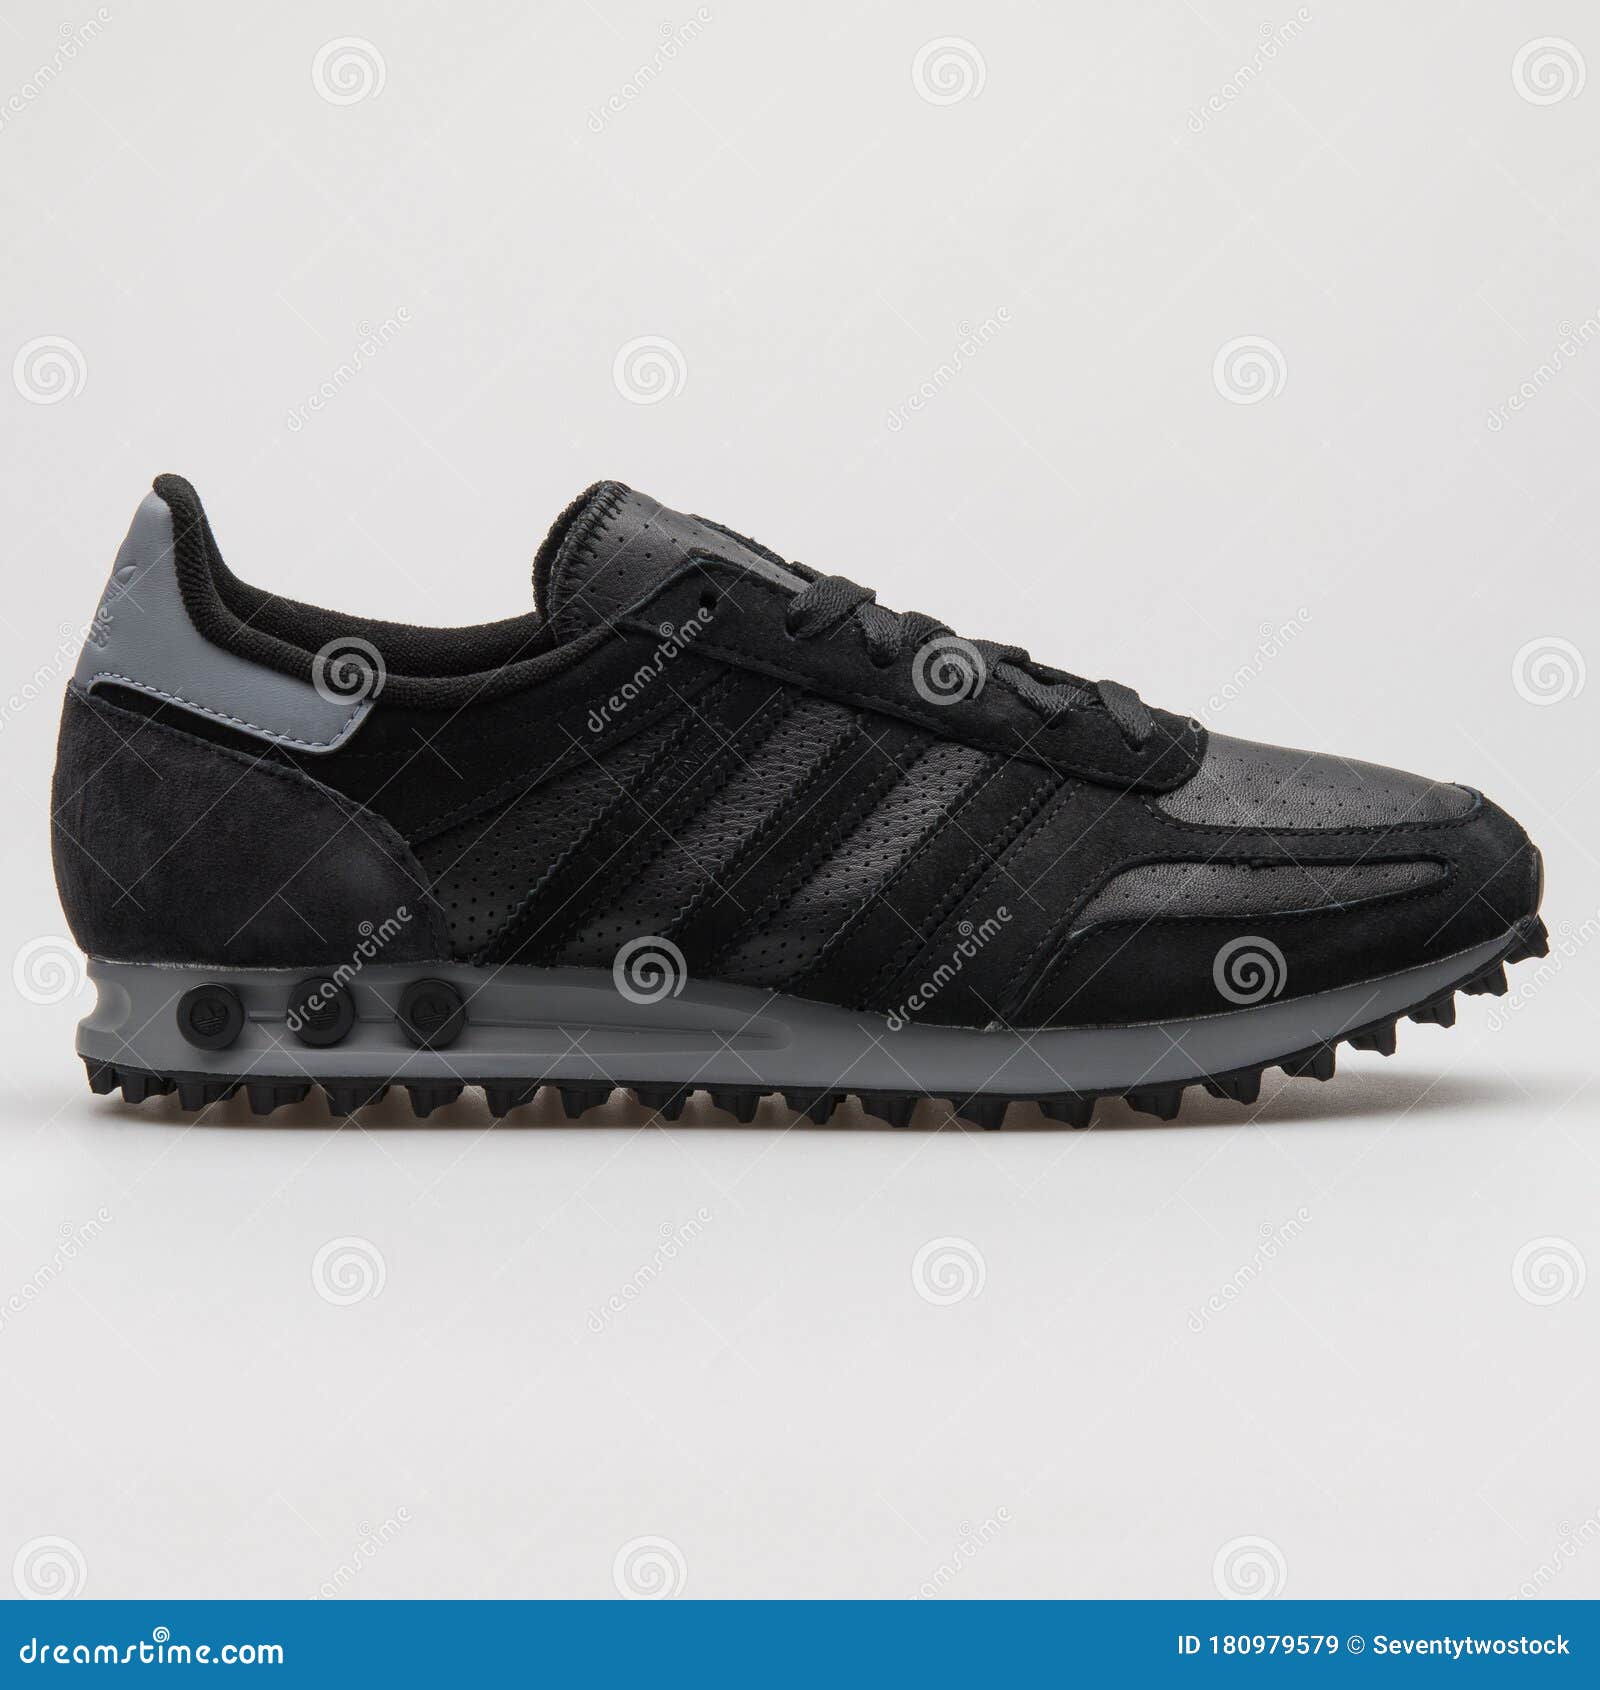 Adidas La Trainer Zapatillas Negras Y Grises Imagen de archivo editorial - Imagen de accesorios: 180979579